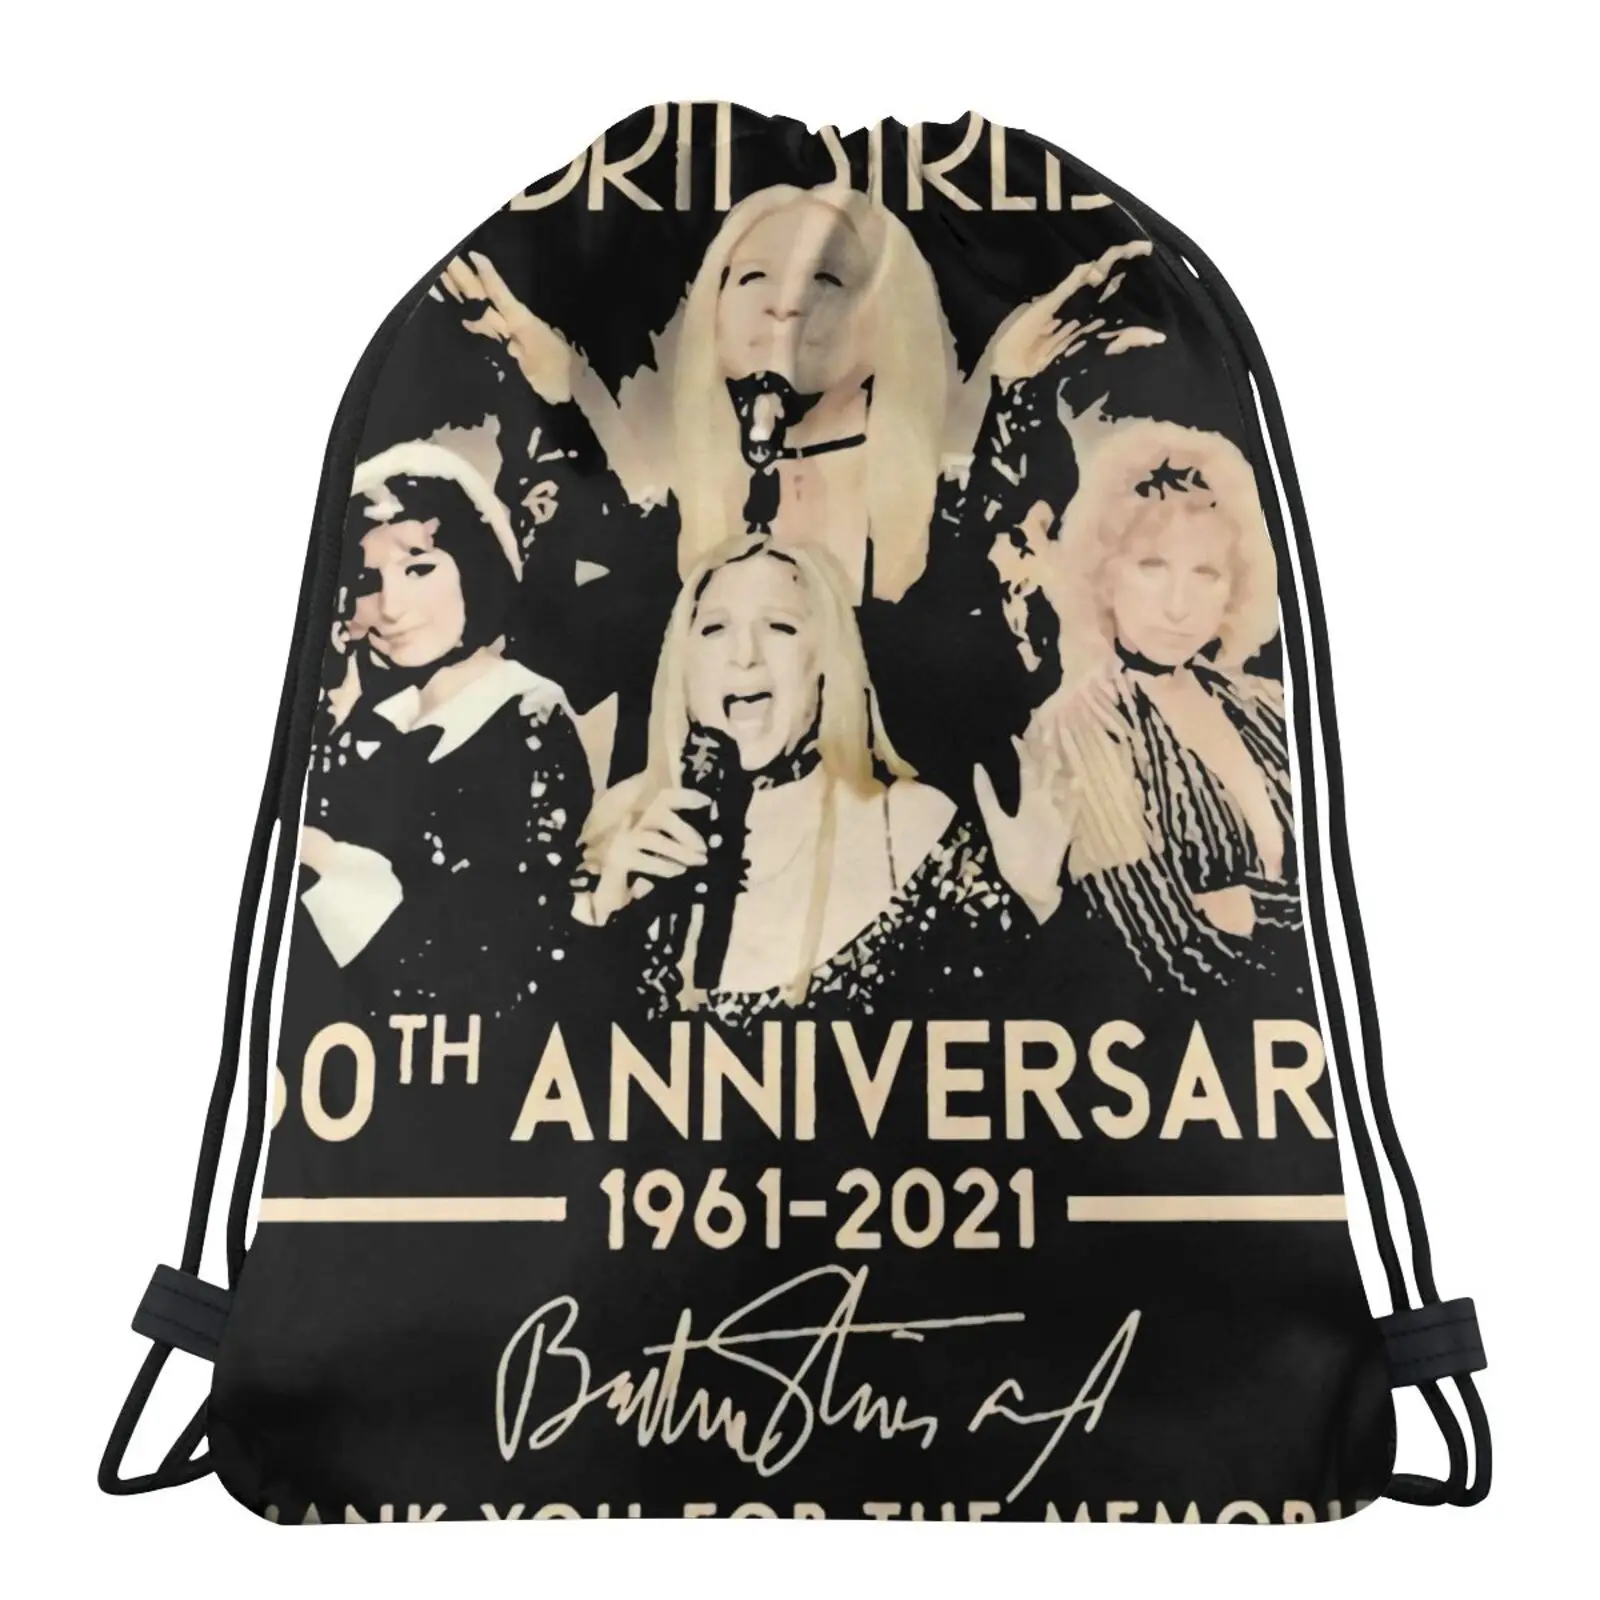 

Сумка Barbra Streisand на годовщину 60-летия 1961, сумки на шнурке, ткань, рюкзак с индивидуальным логотипом, сумка для девочек, сумка, сумка